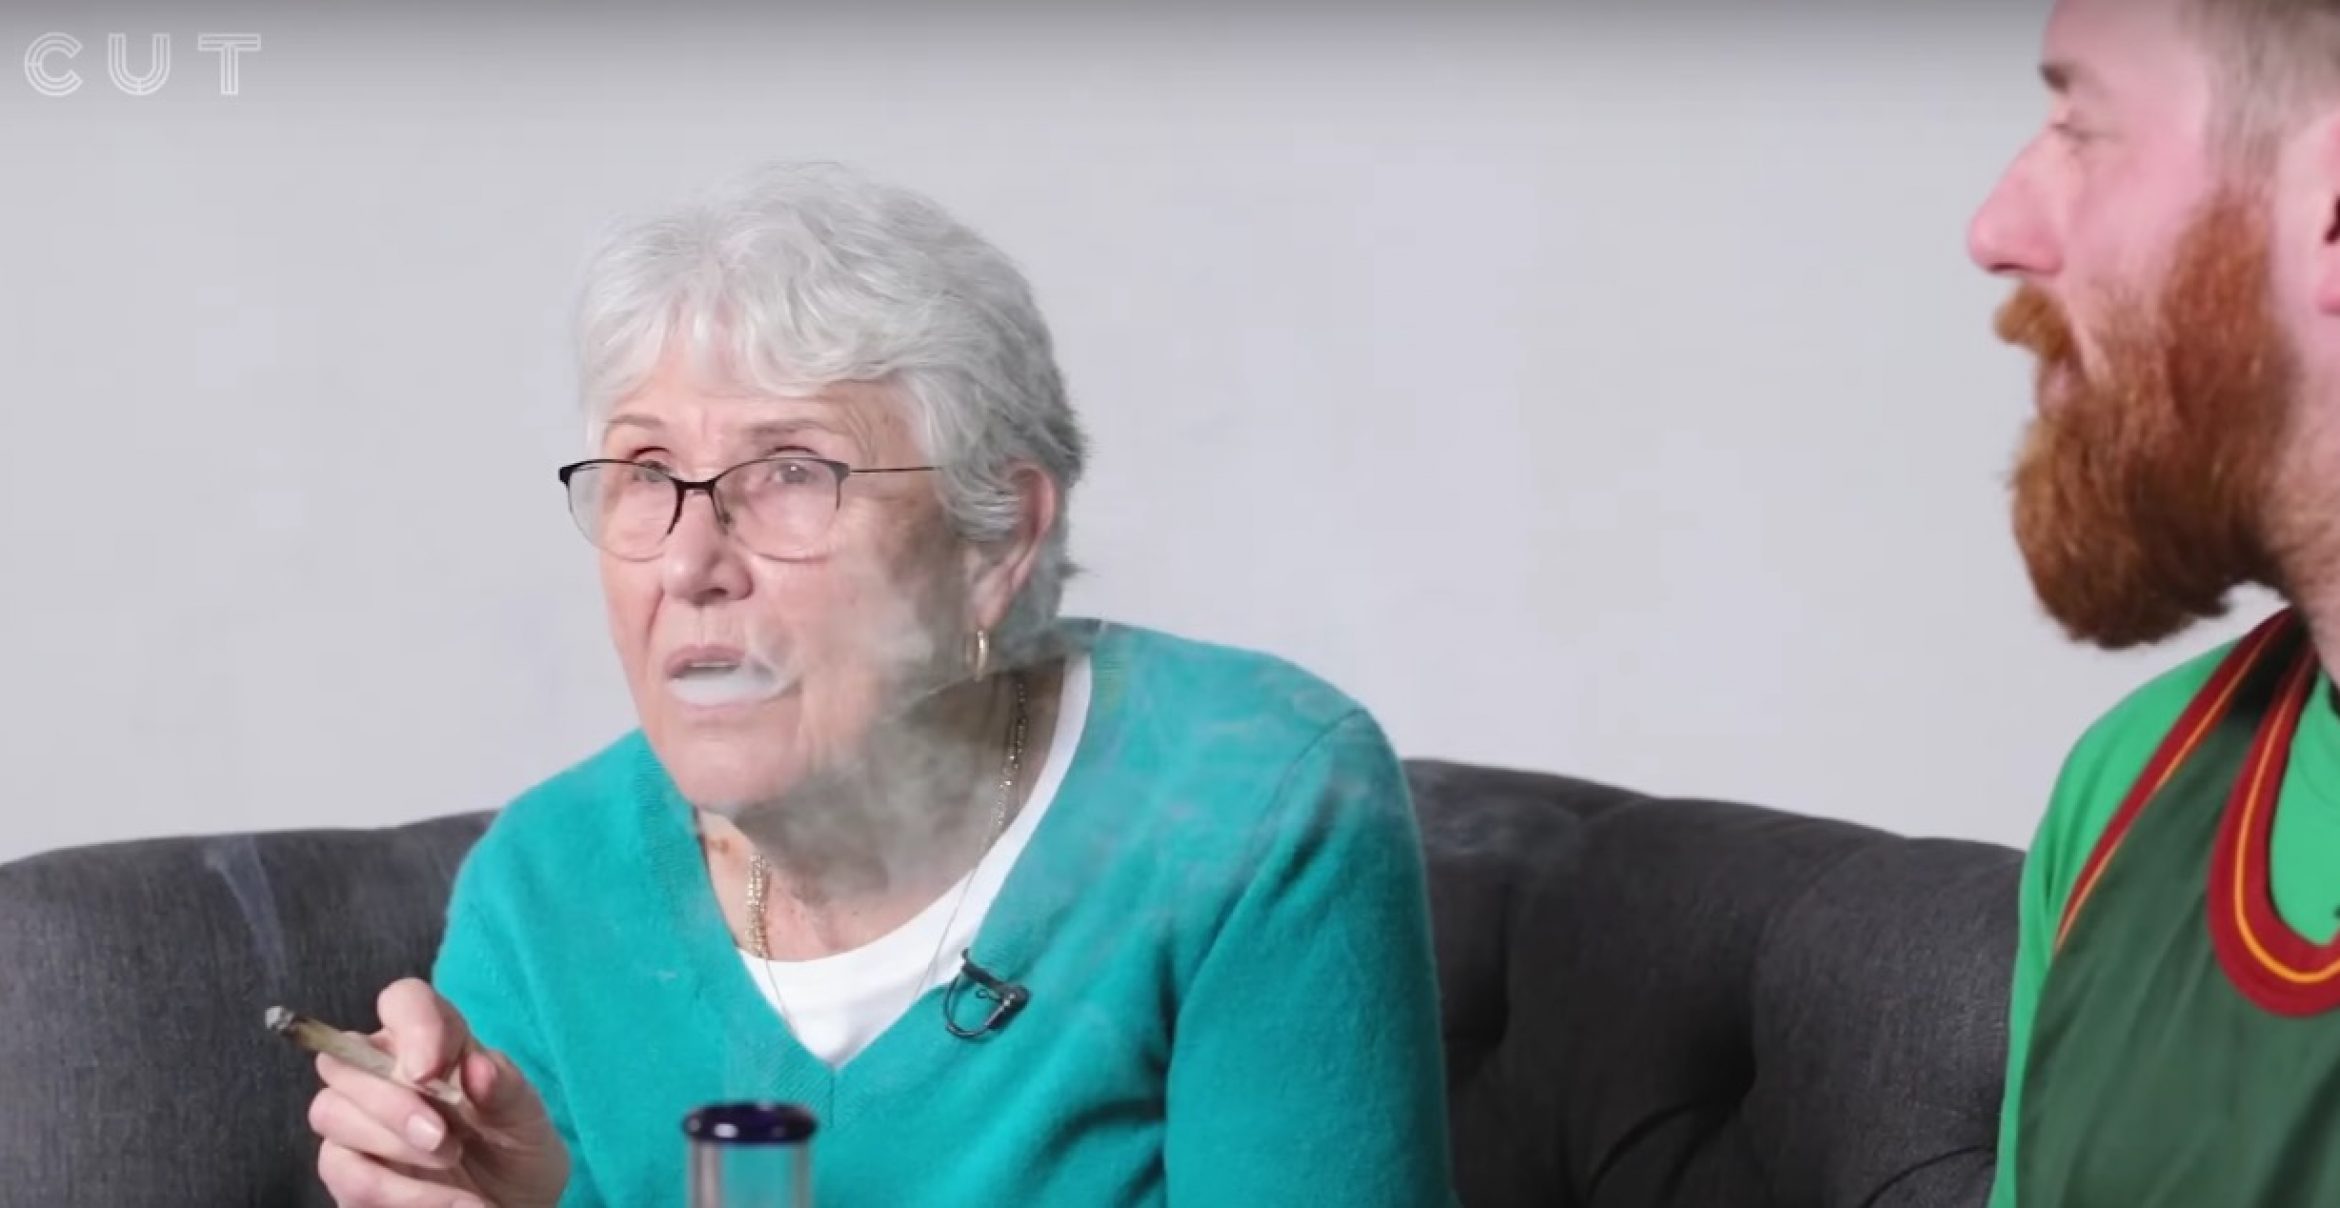 Kiffen mit Granny: Wenn Oma und Enkel das erste Mal zusammen Weed rauchen